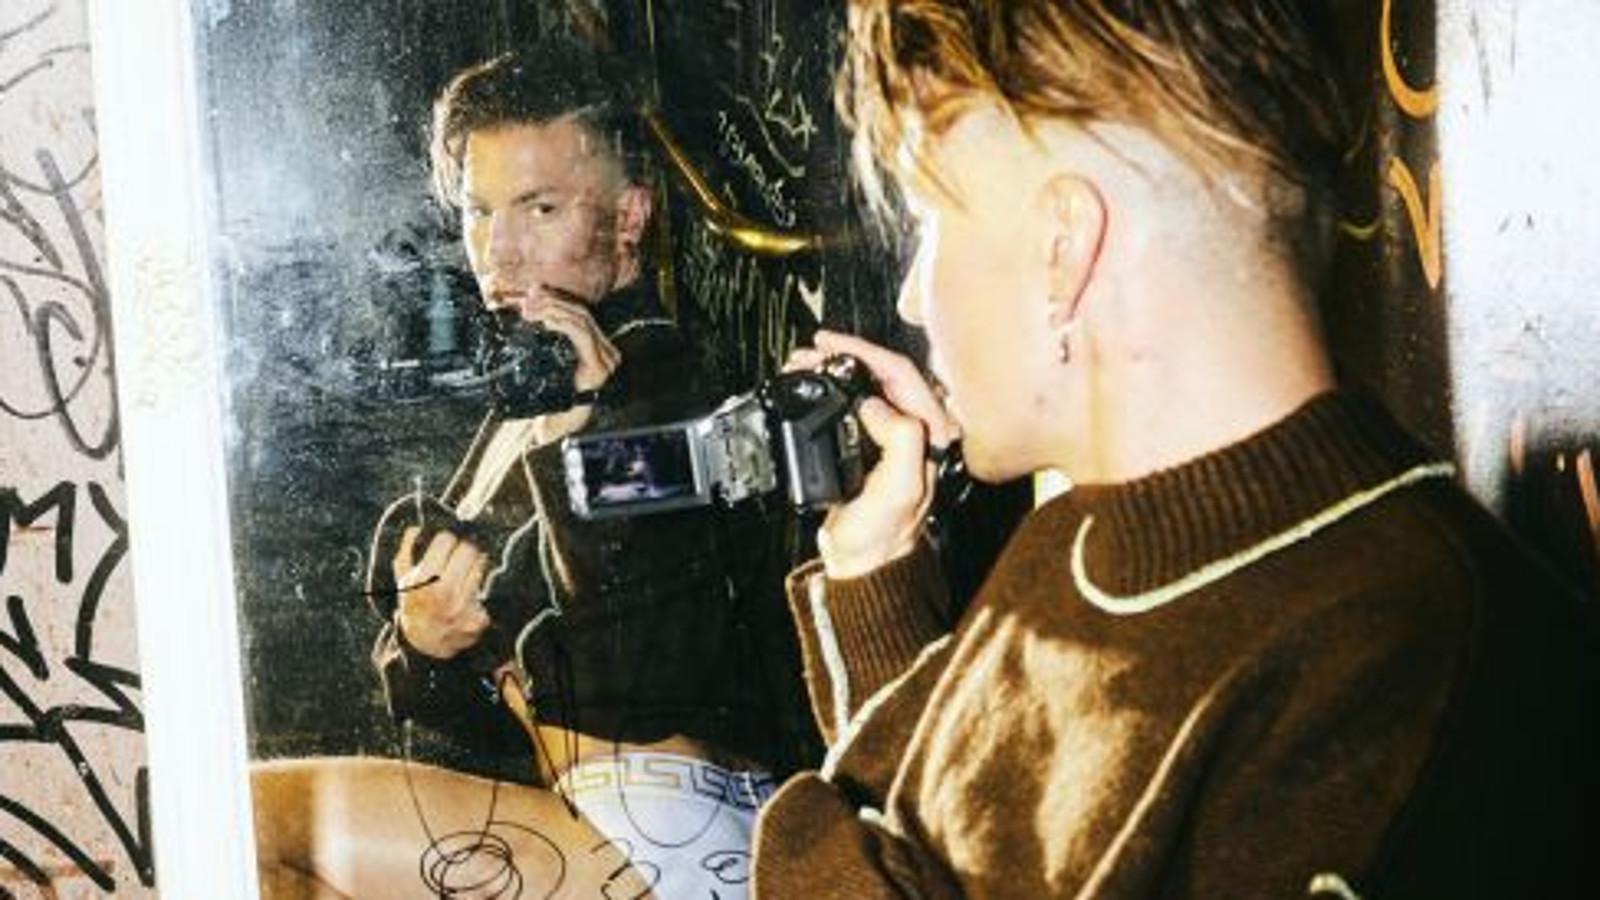 Kuvassa on Antti Tuisku, joka katsoo peilistä itseään ja hänellä on kamera kädessään. Kuvassa on ruskeita graafisia elementtejä.